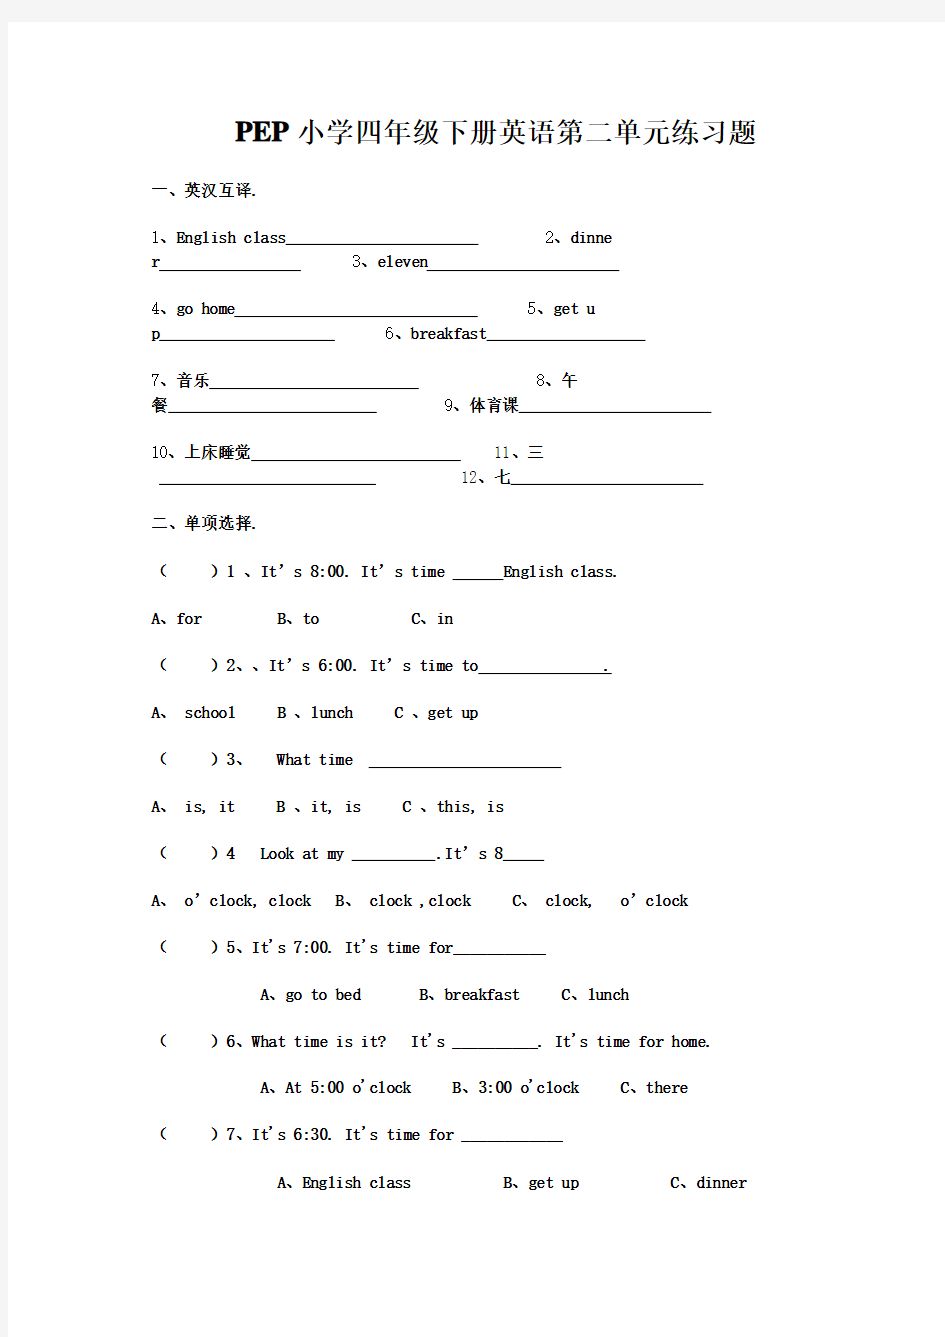 (完整版)PEP小学四年级下册英语练习题